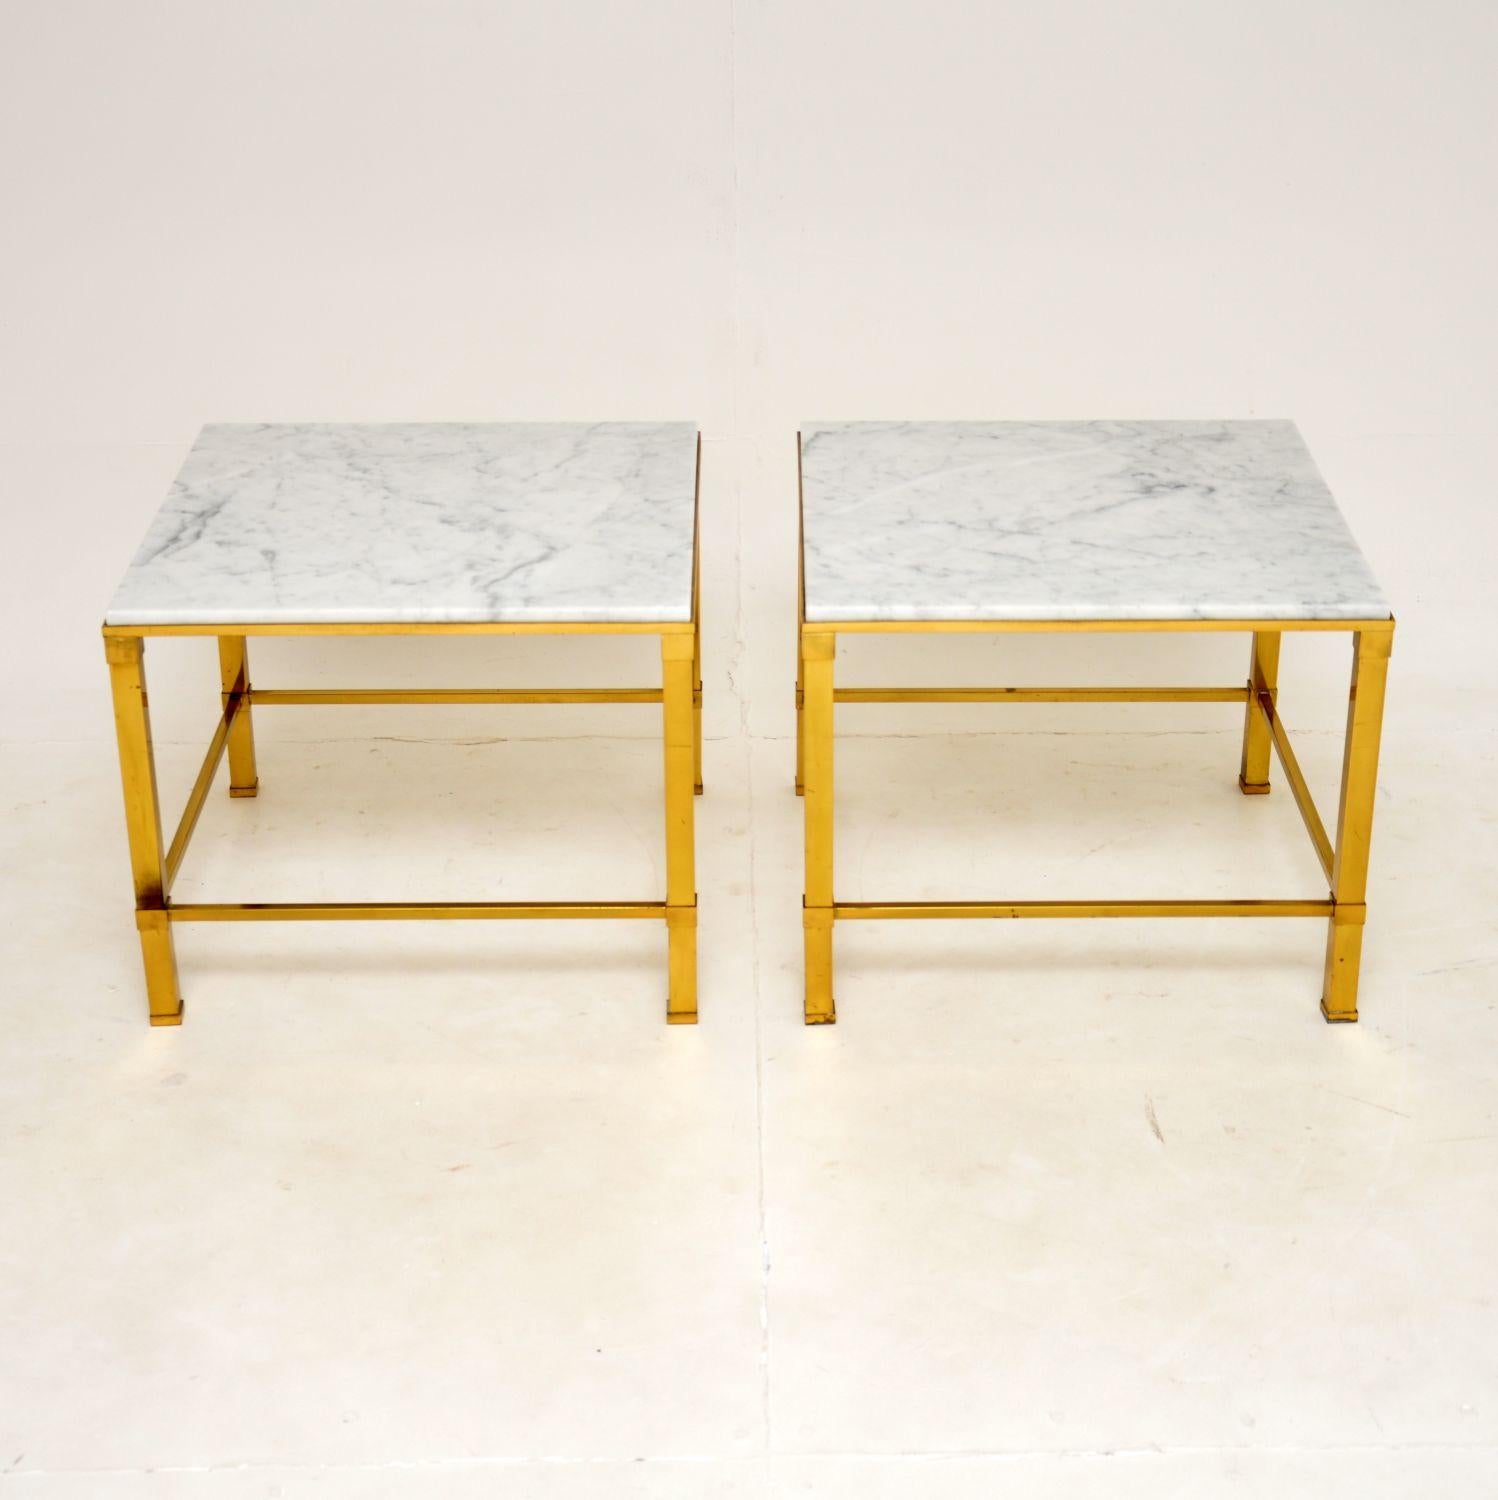 Une paire de tables d'appoint en laiton et en marbre très élégante et extrêmement bien réalisée. Ils ont été fabriqués en Italie et datent des années 1970.

La qualité est superbe, ils sont d'une grande taille et utiles comme tables d'appoint dans